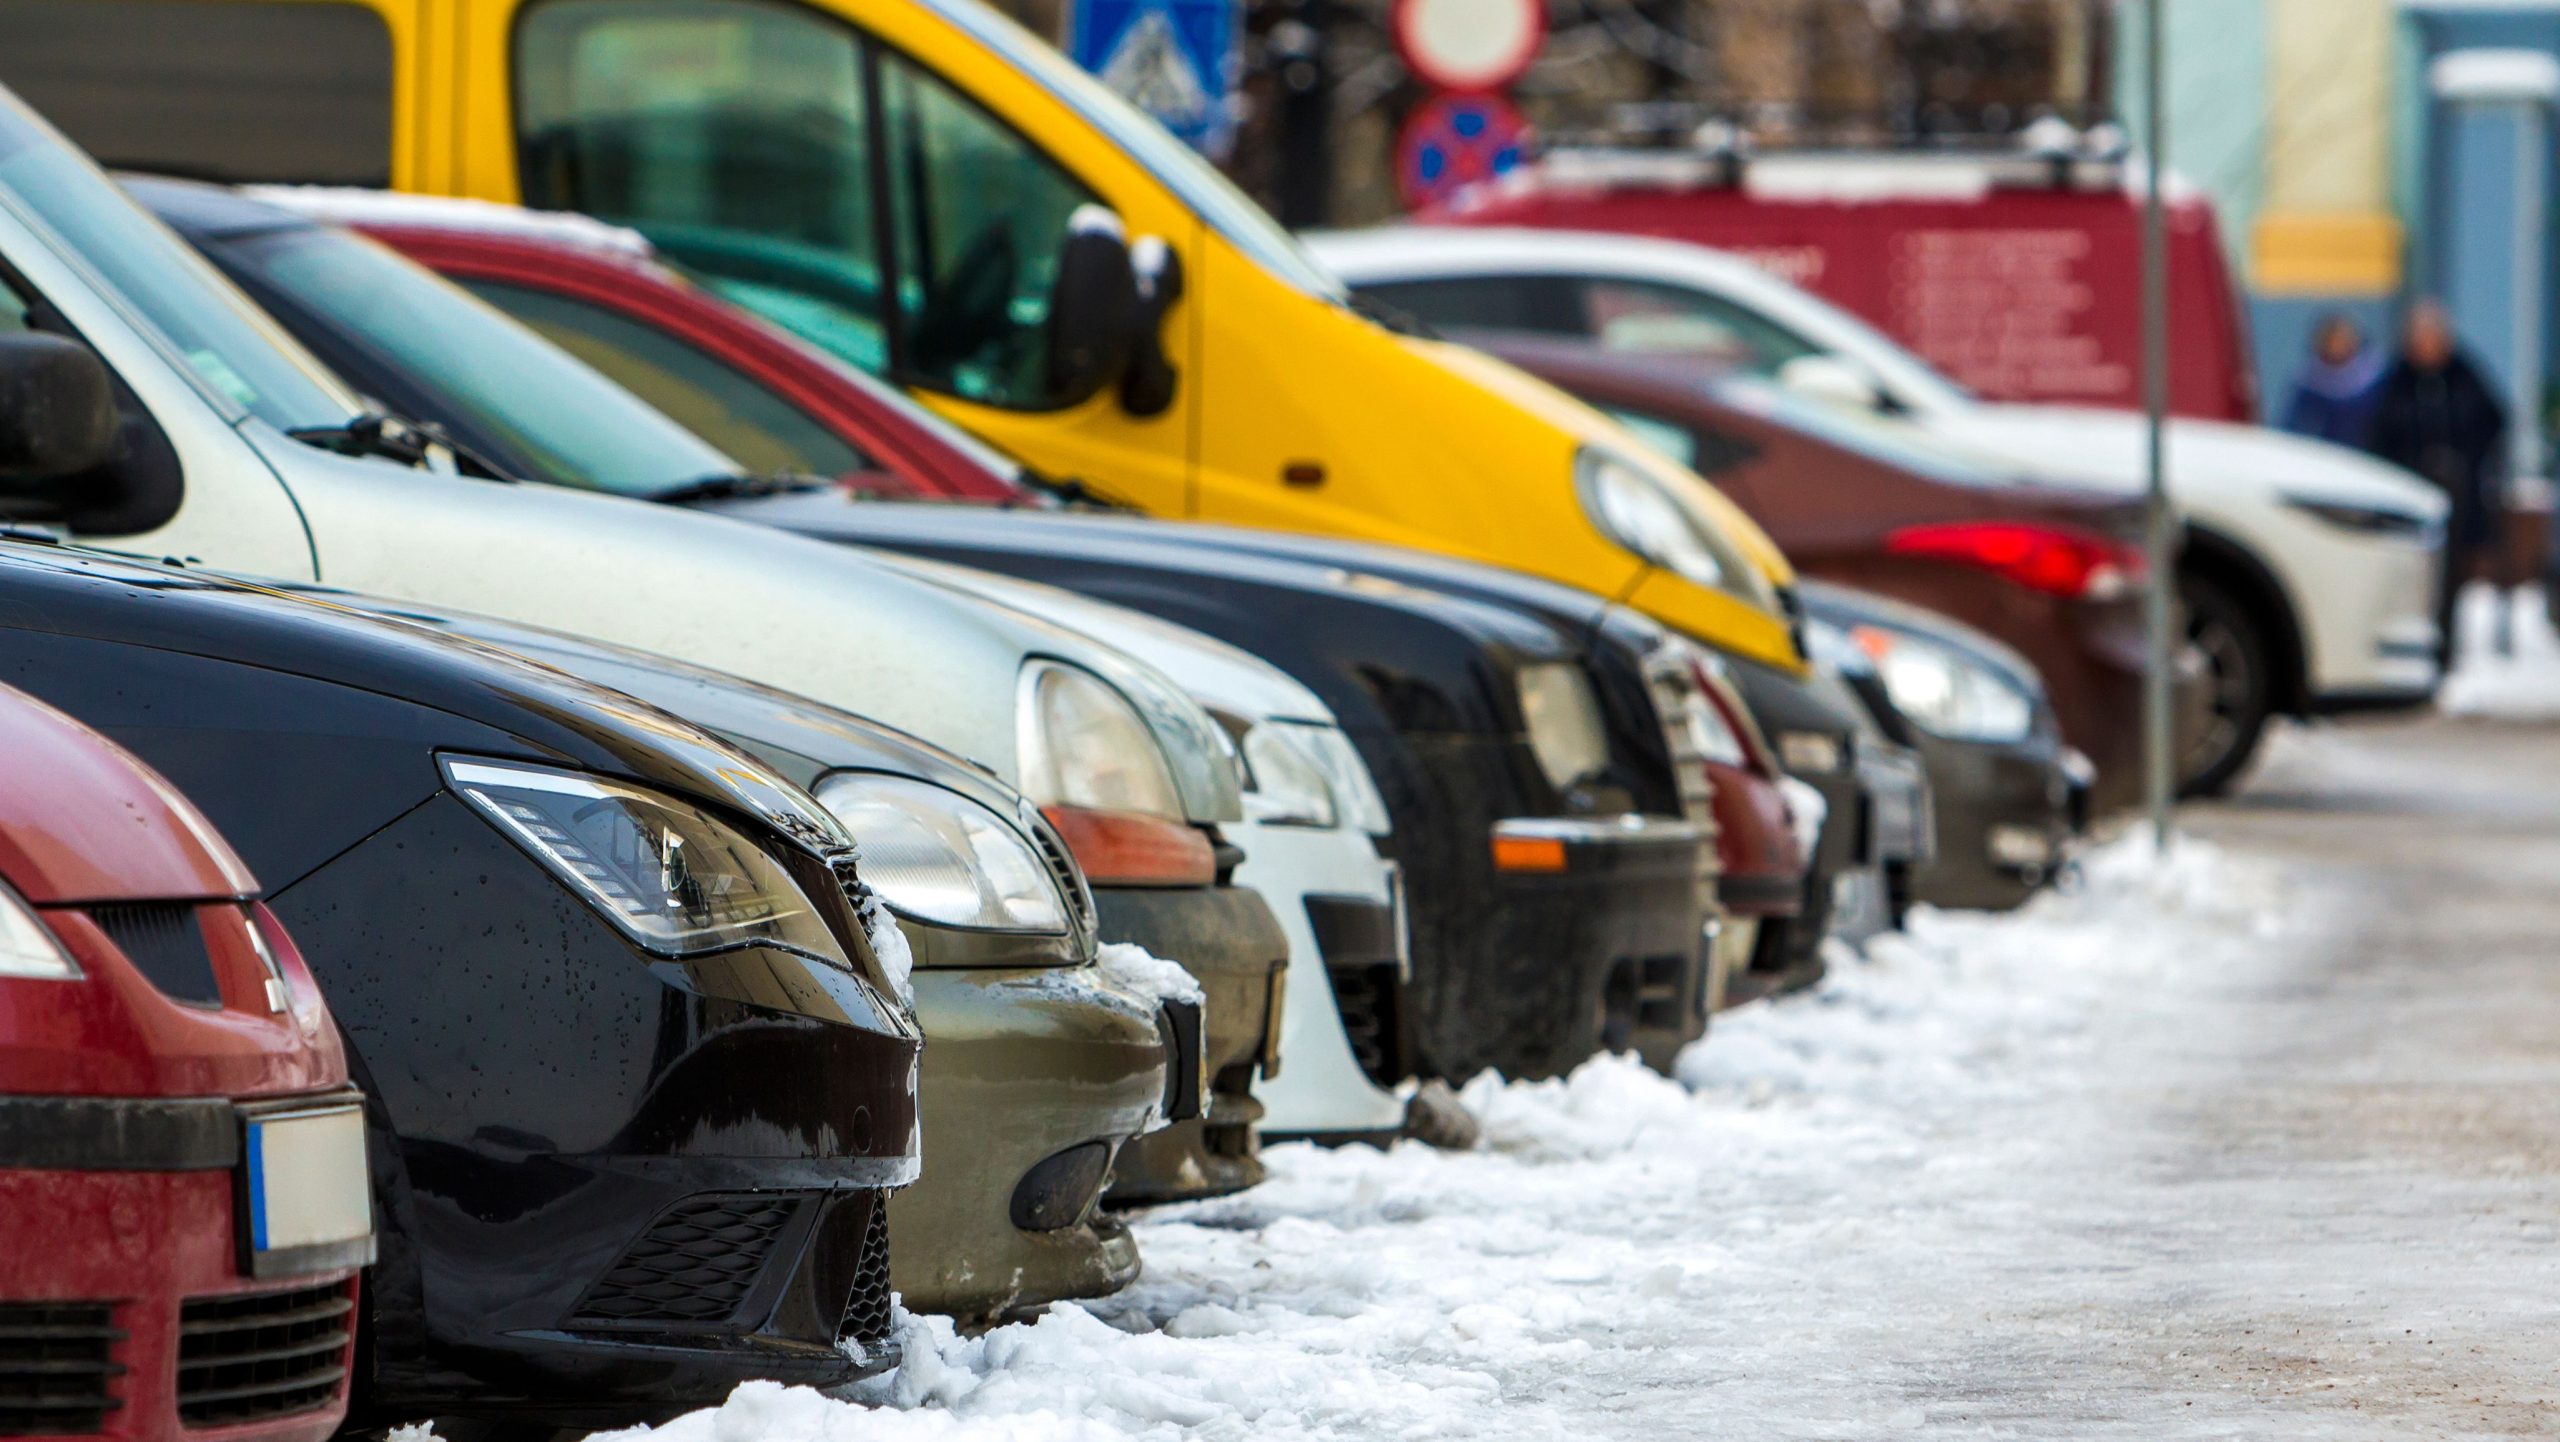 snowy car park with cars